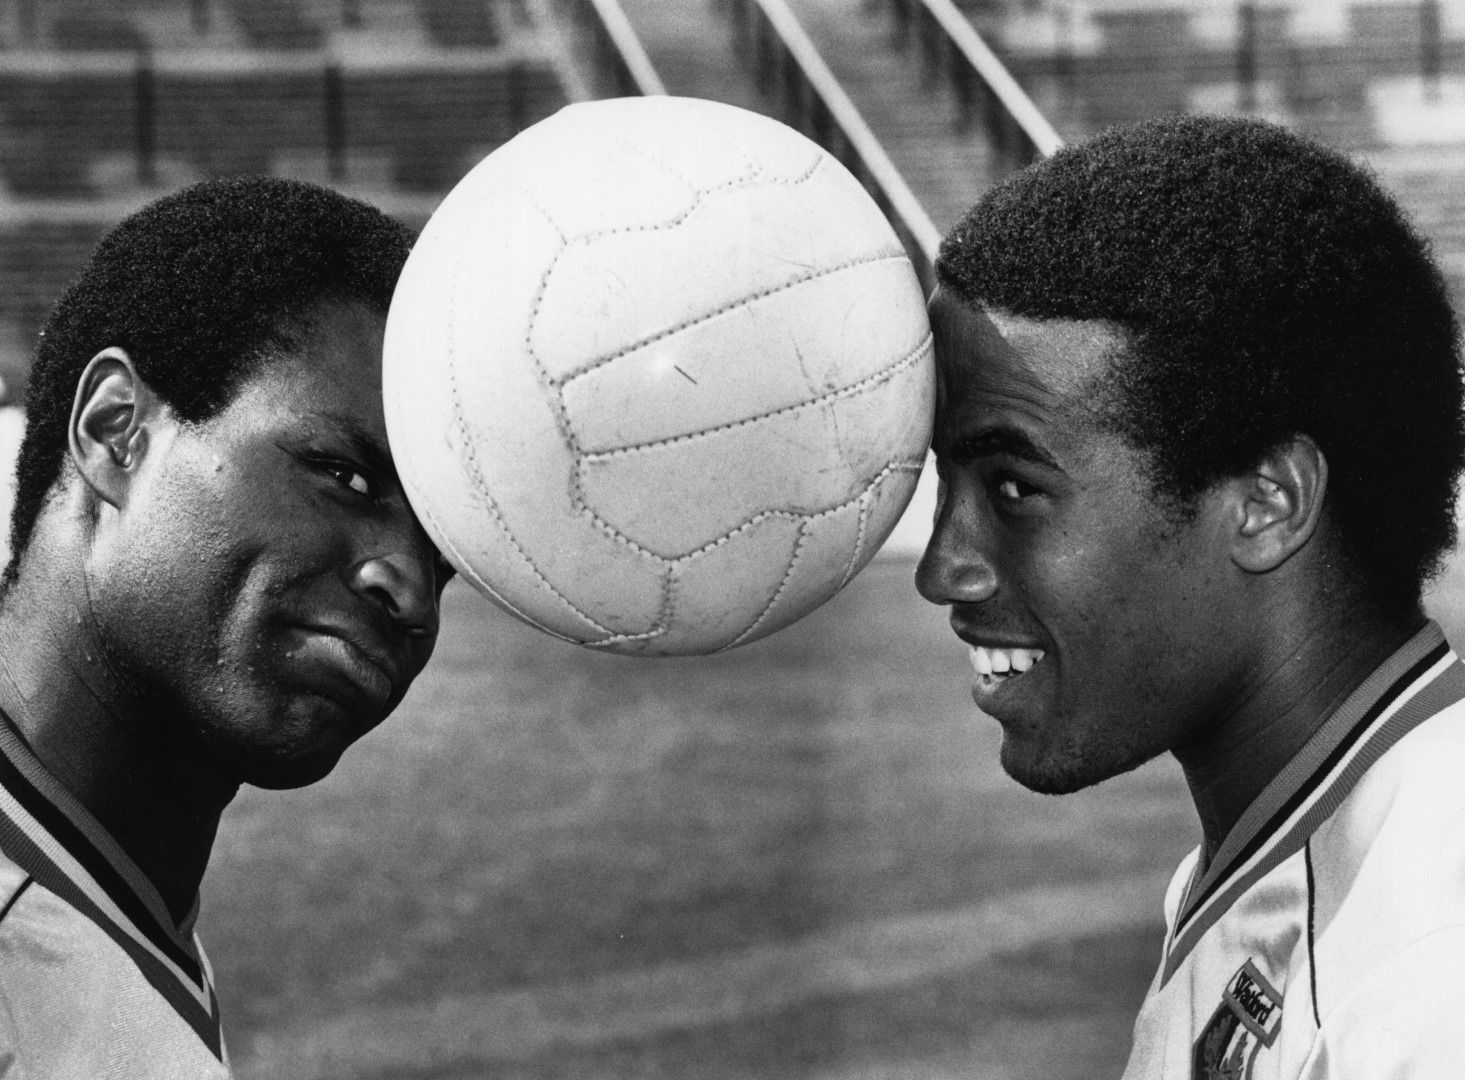 Джон Барнс (вдясно) е ключова фигура в английския футбол като първата суперзвезда с тъмен цвят на кожата. Снимката със съотборник в Уотфорд от 80-те години е символна в битката с расизма. Фотосът обикаля  първите страници на вестниците в Англия.